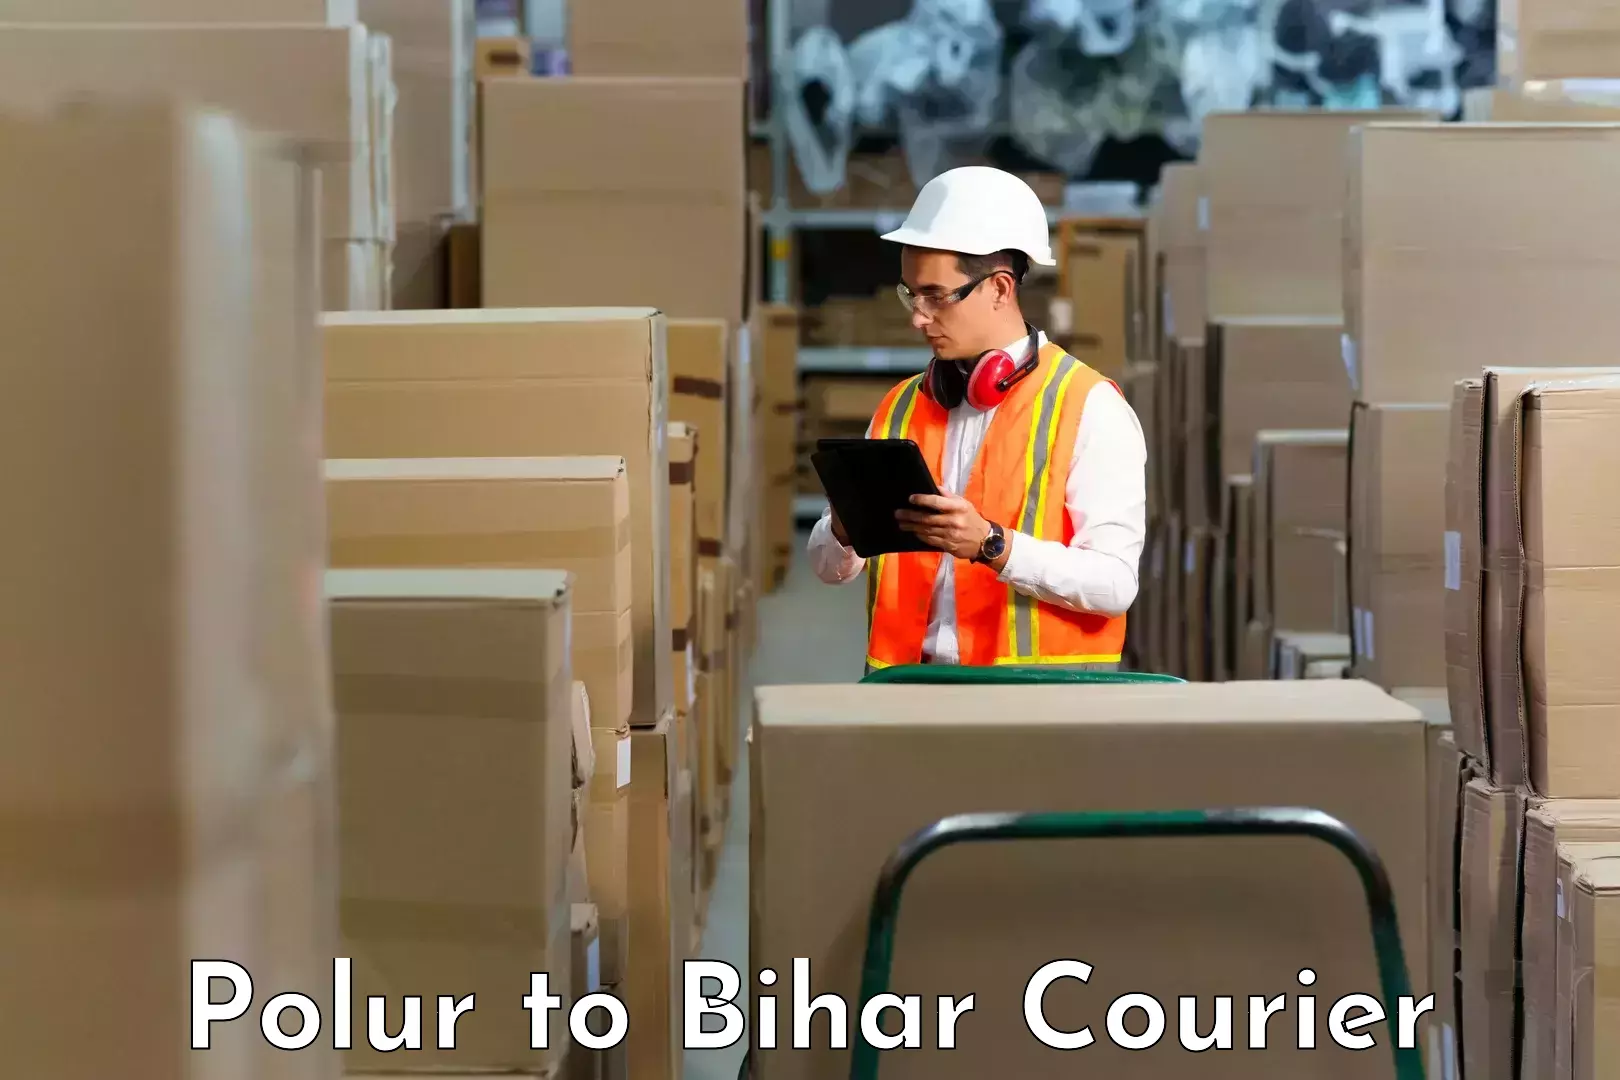 Customer-centric shipping Polur to Aurangabad Bihar